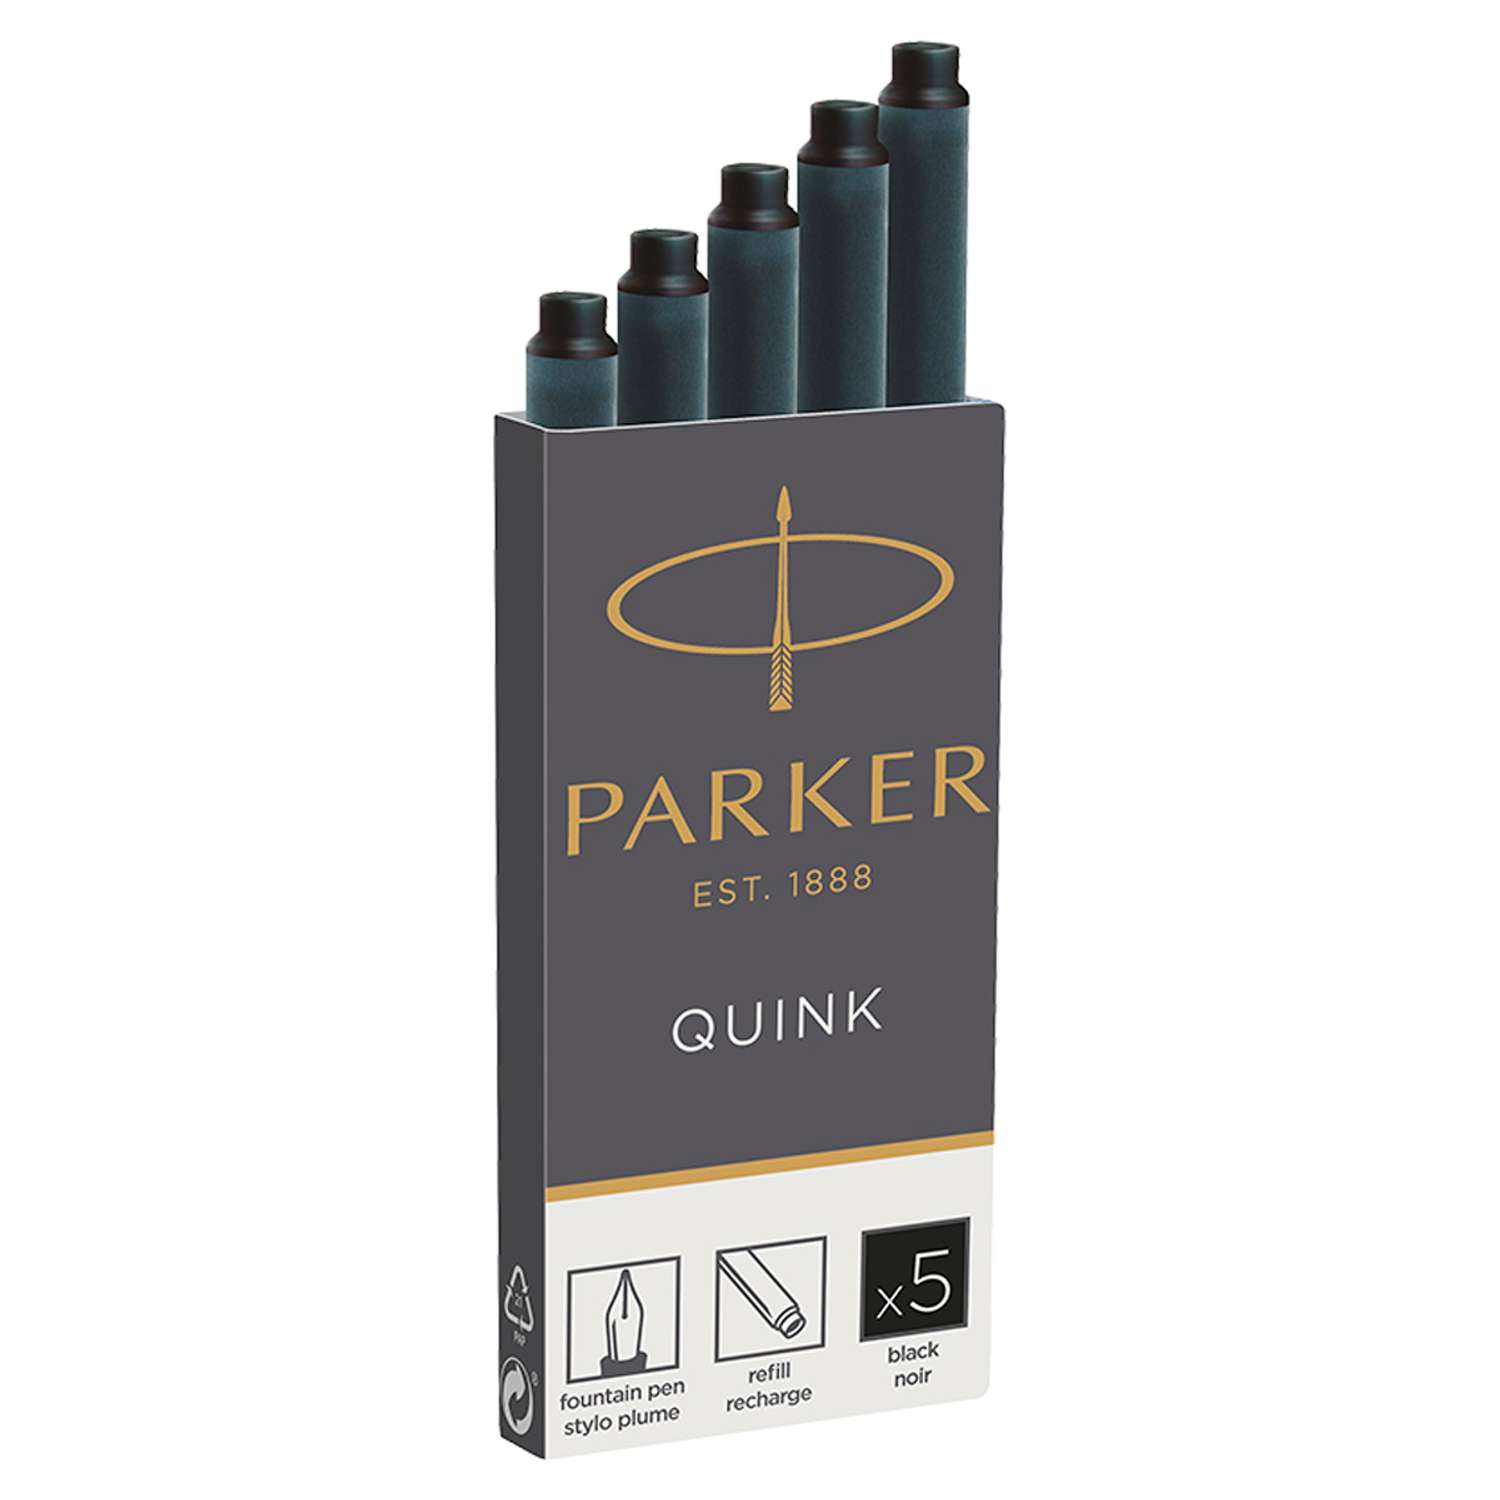 Картриджи чернильные PARKER Cartridge Quink черные 5шт картонная коробка - фото 1